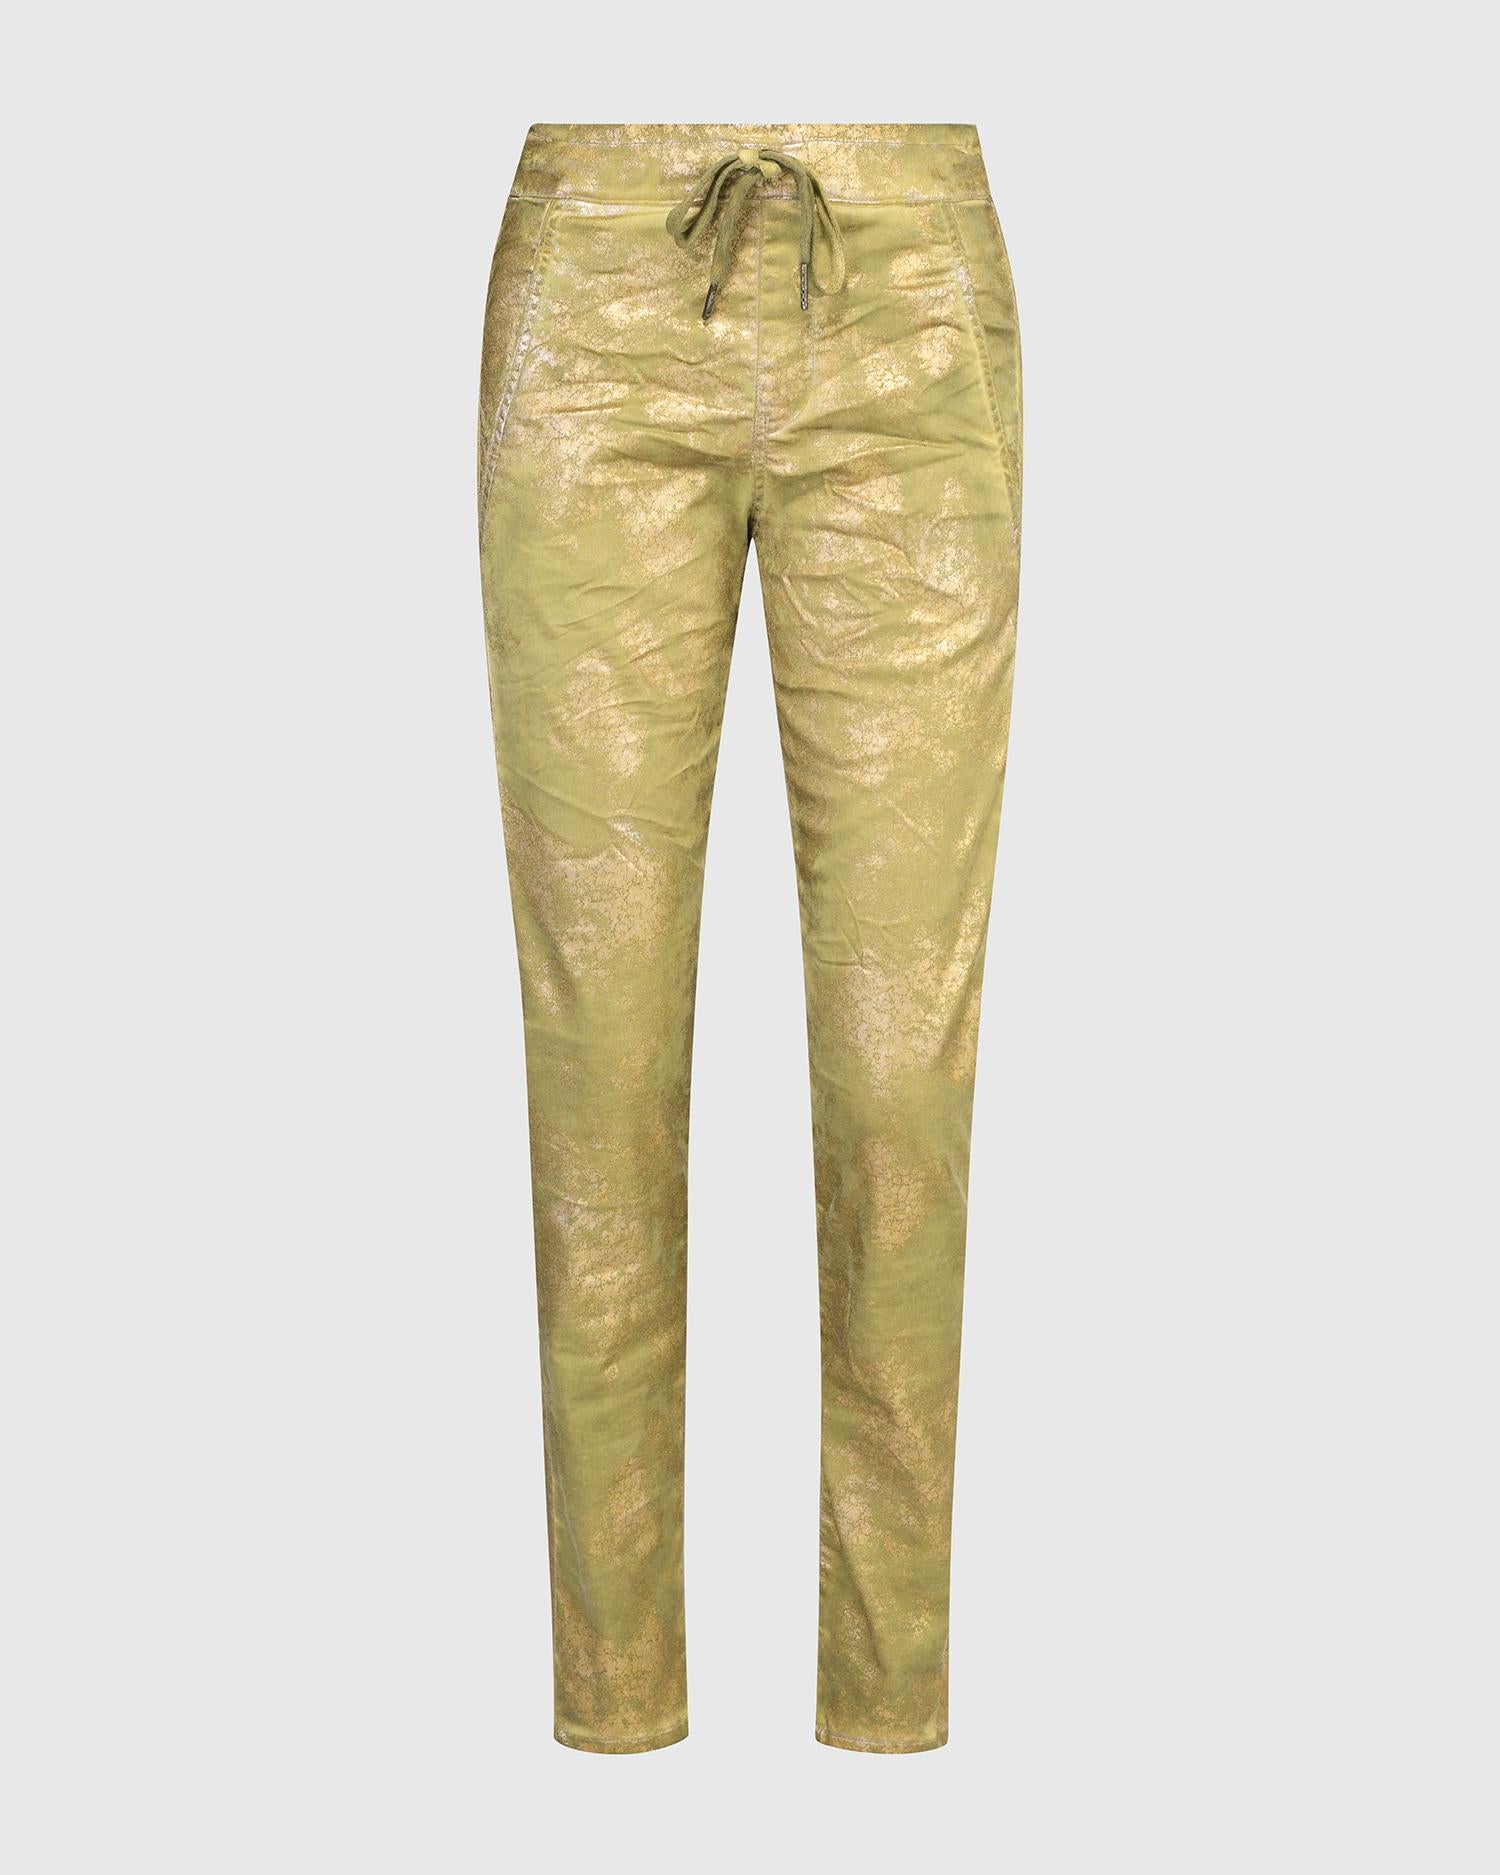 metallic goudkleurige broek met koord sp821g - Alembika